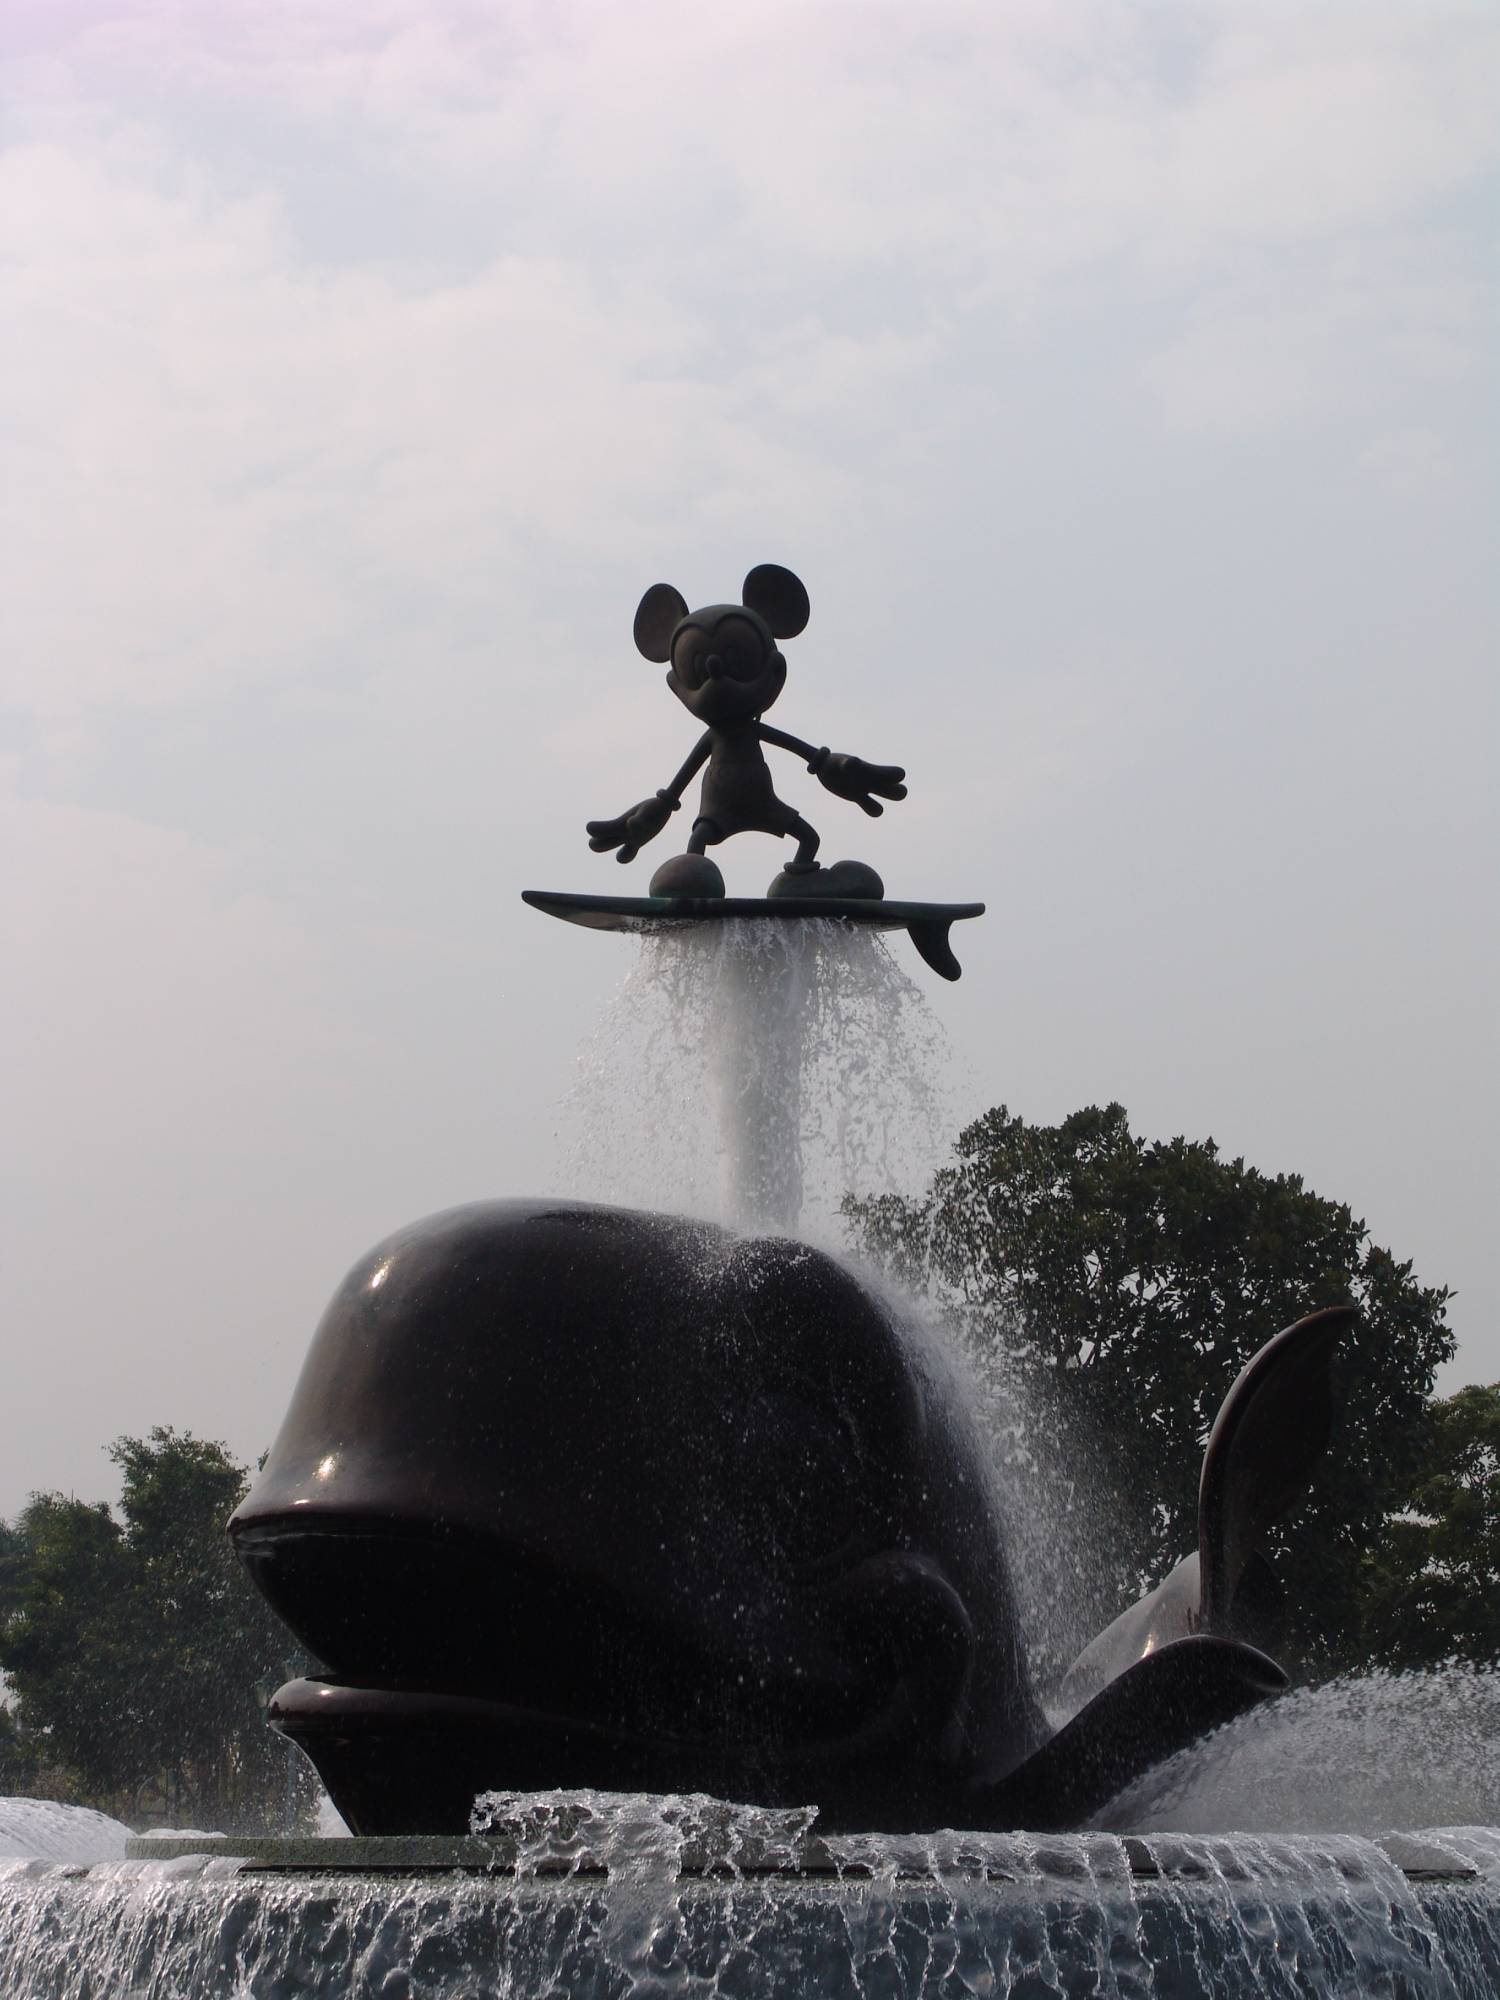 Hong Kong Disneyland - entrance plaza fountain